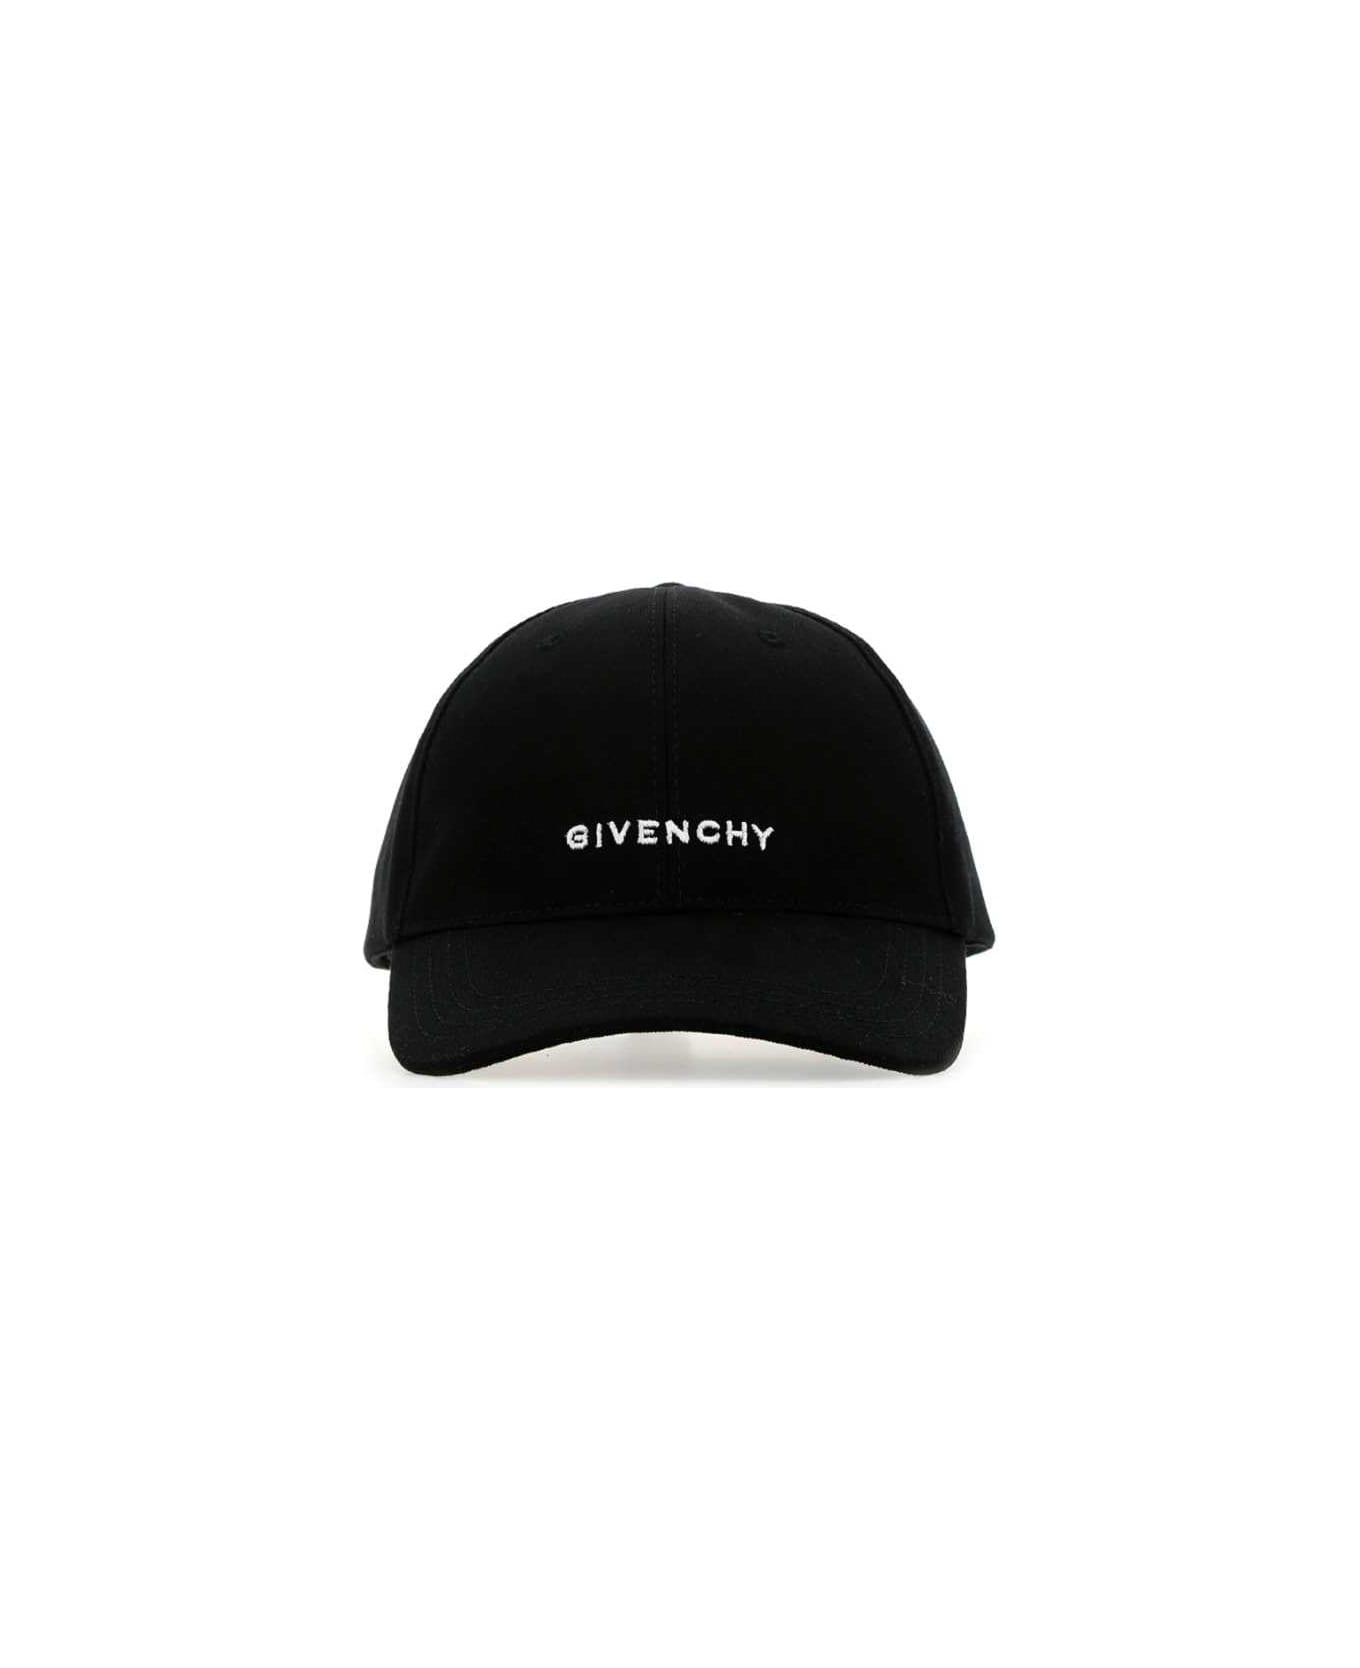 Givenchy Black Cotton Baseball Cap - 001